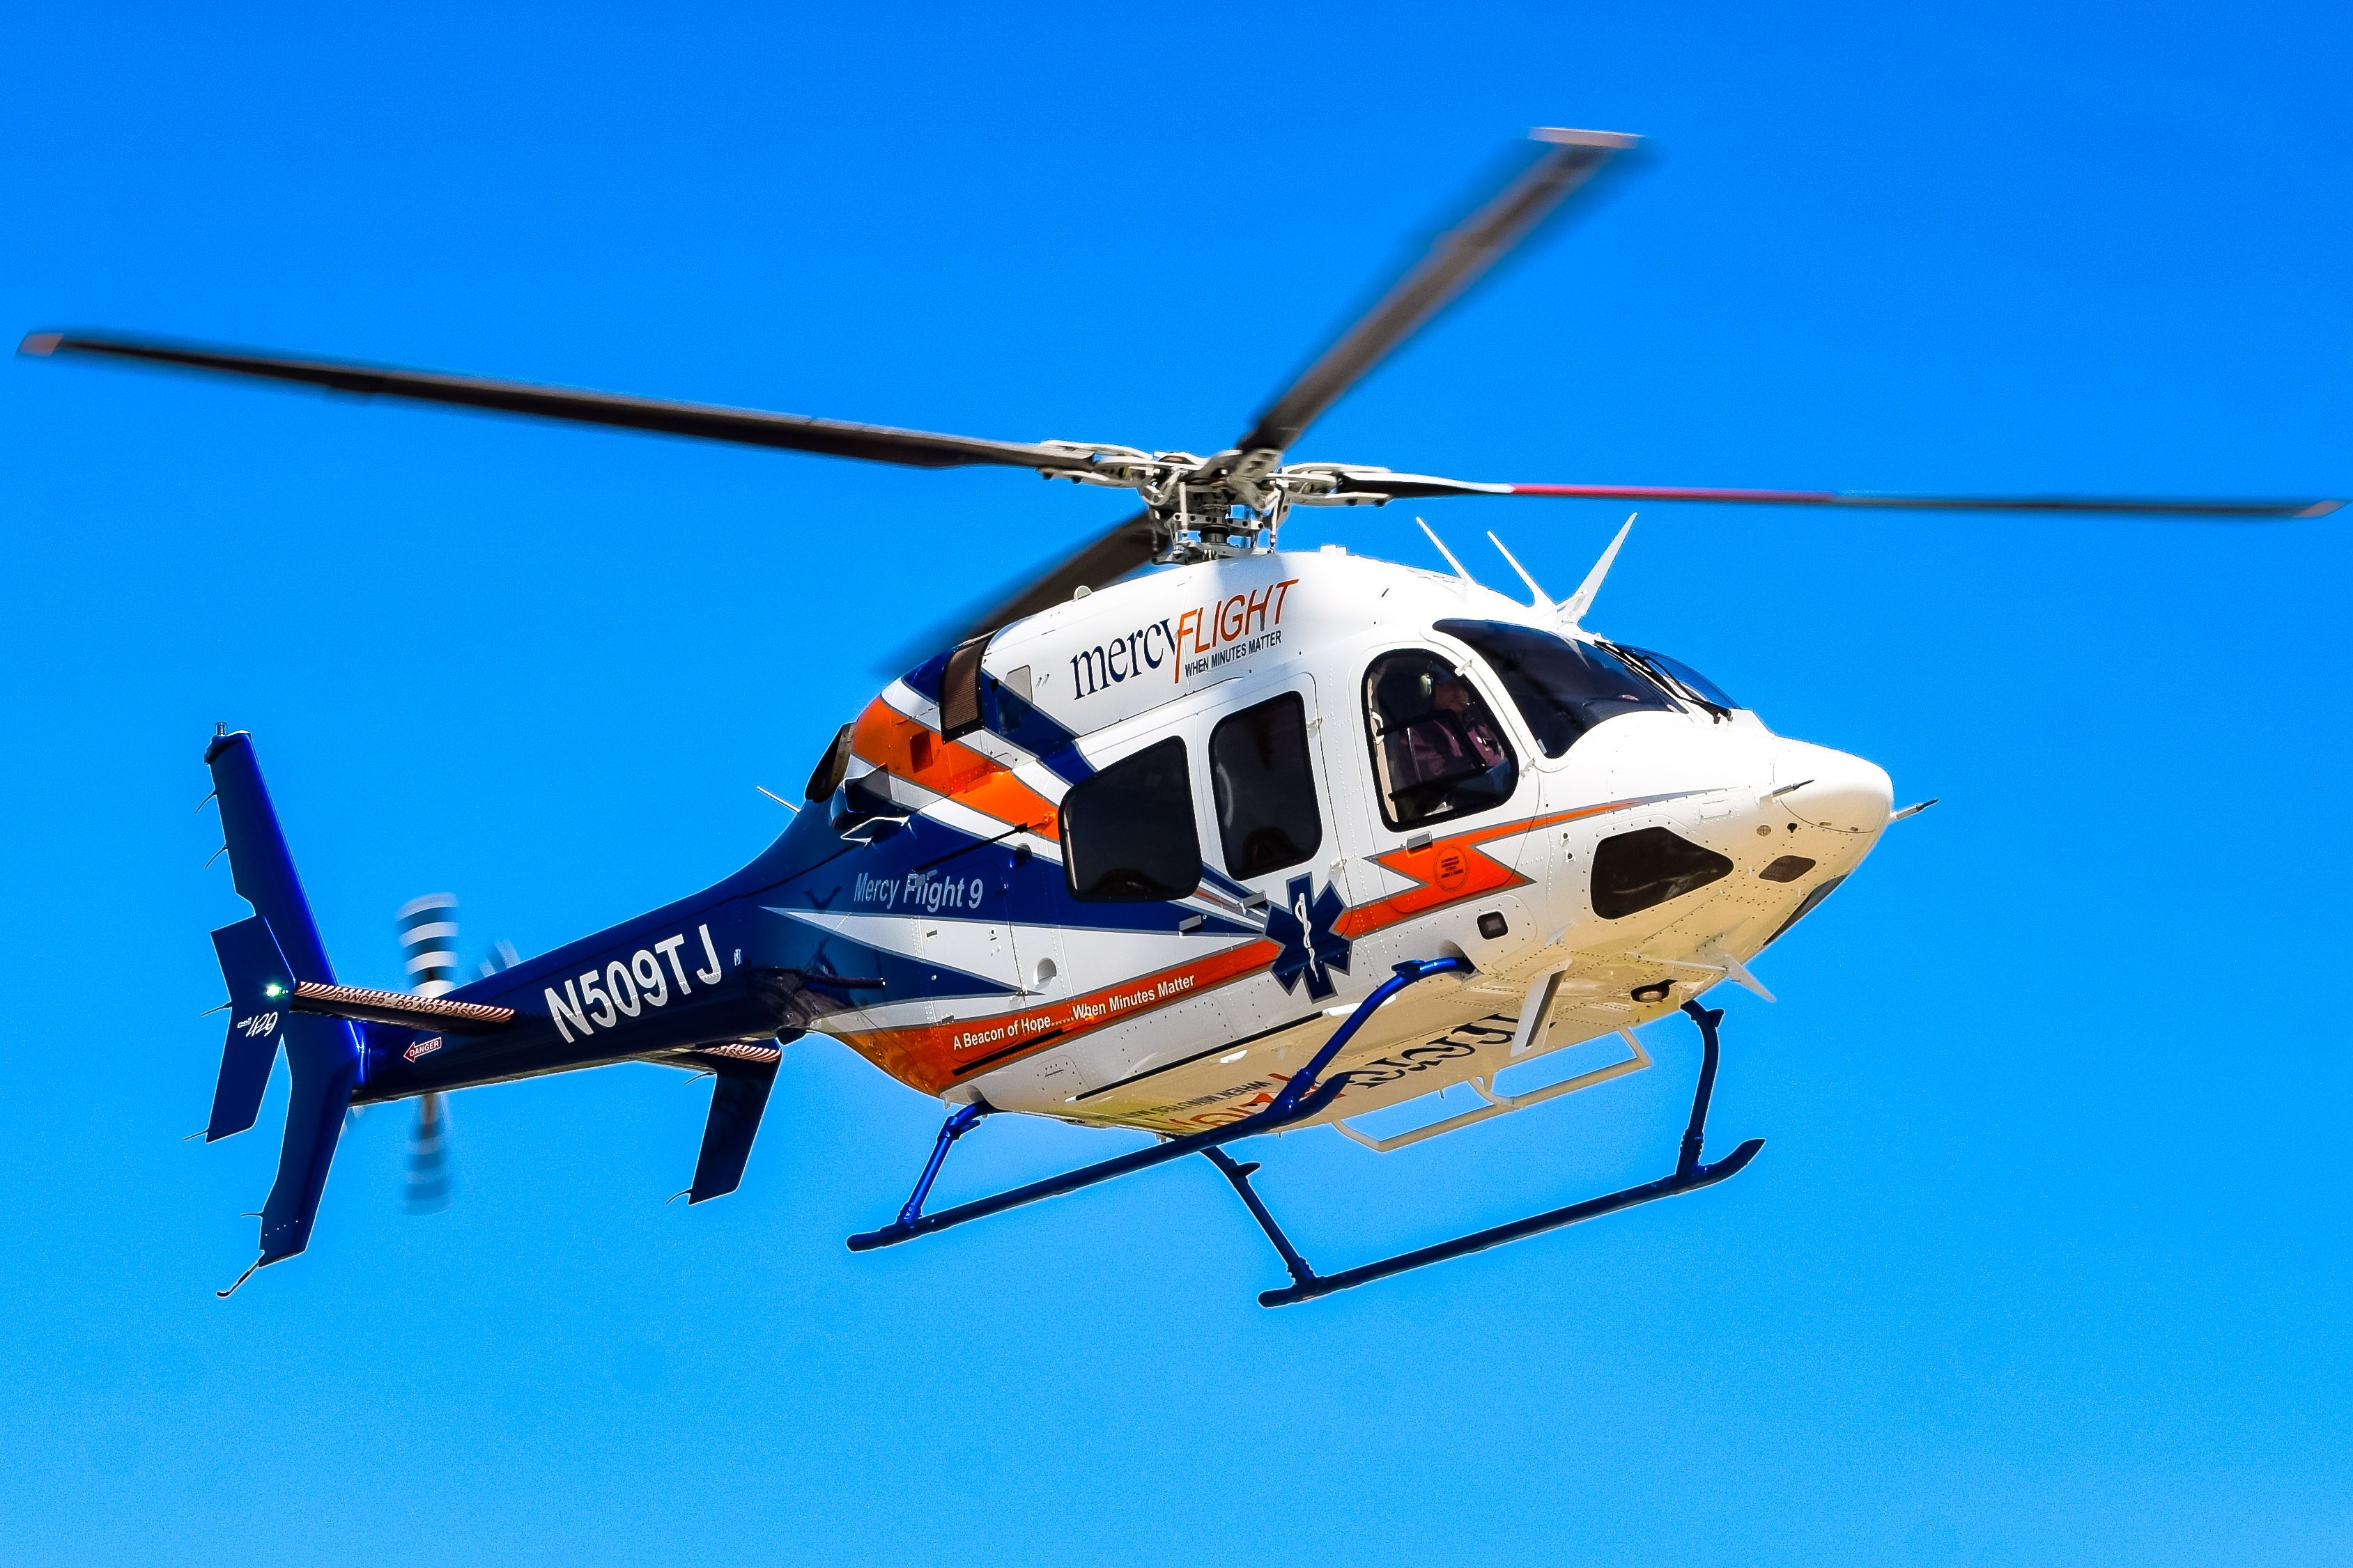 Bell 429 GlobalRanger (N509TJ) - Year: 2023br /Make: Bell Helicopter br /Model: 429 GlobalRanger br /Opby: Mercy Flight WNYbr /Callsign: Mercy Flight 9br /br /Notes: Delivered New 05-15-2023